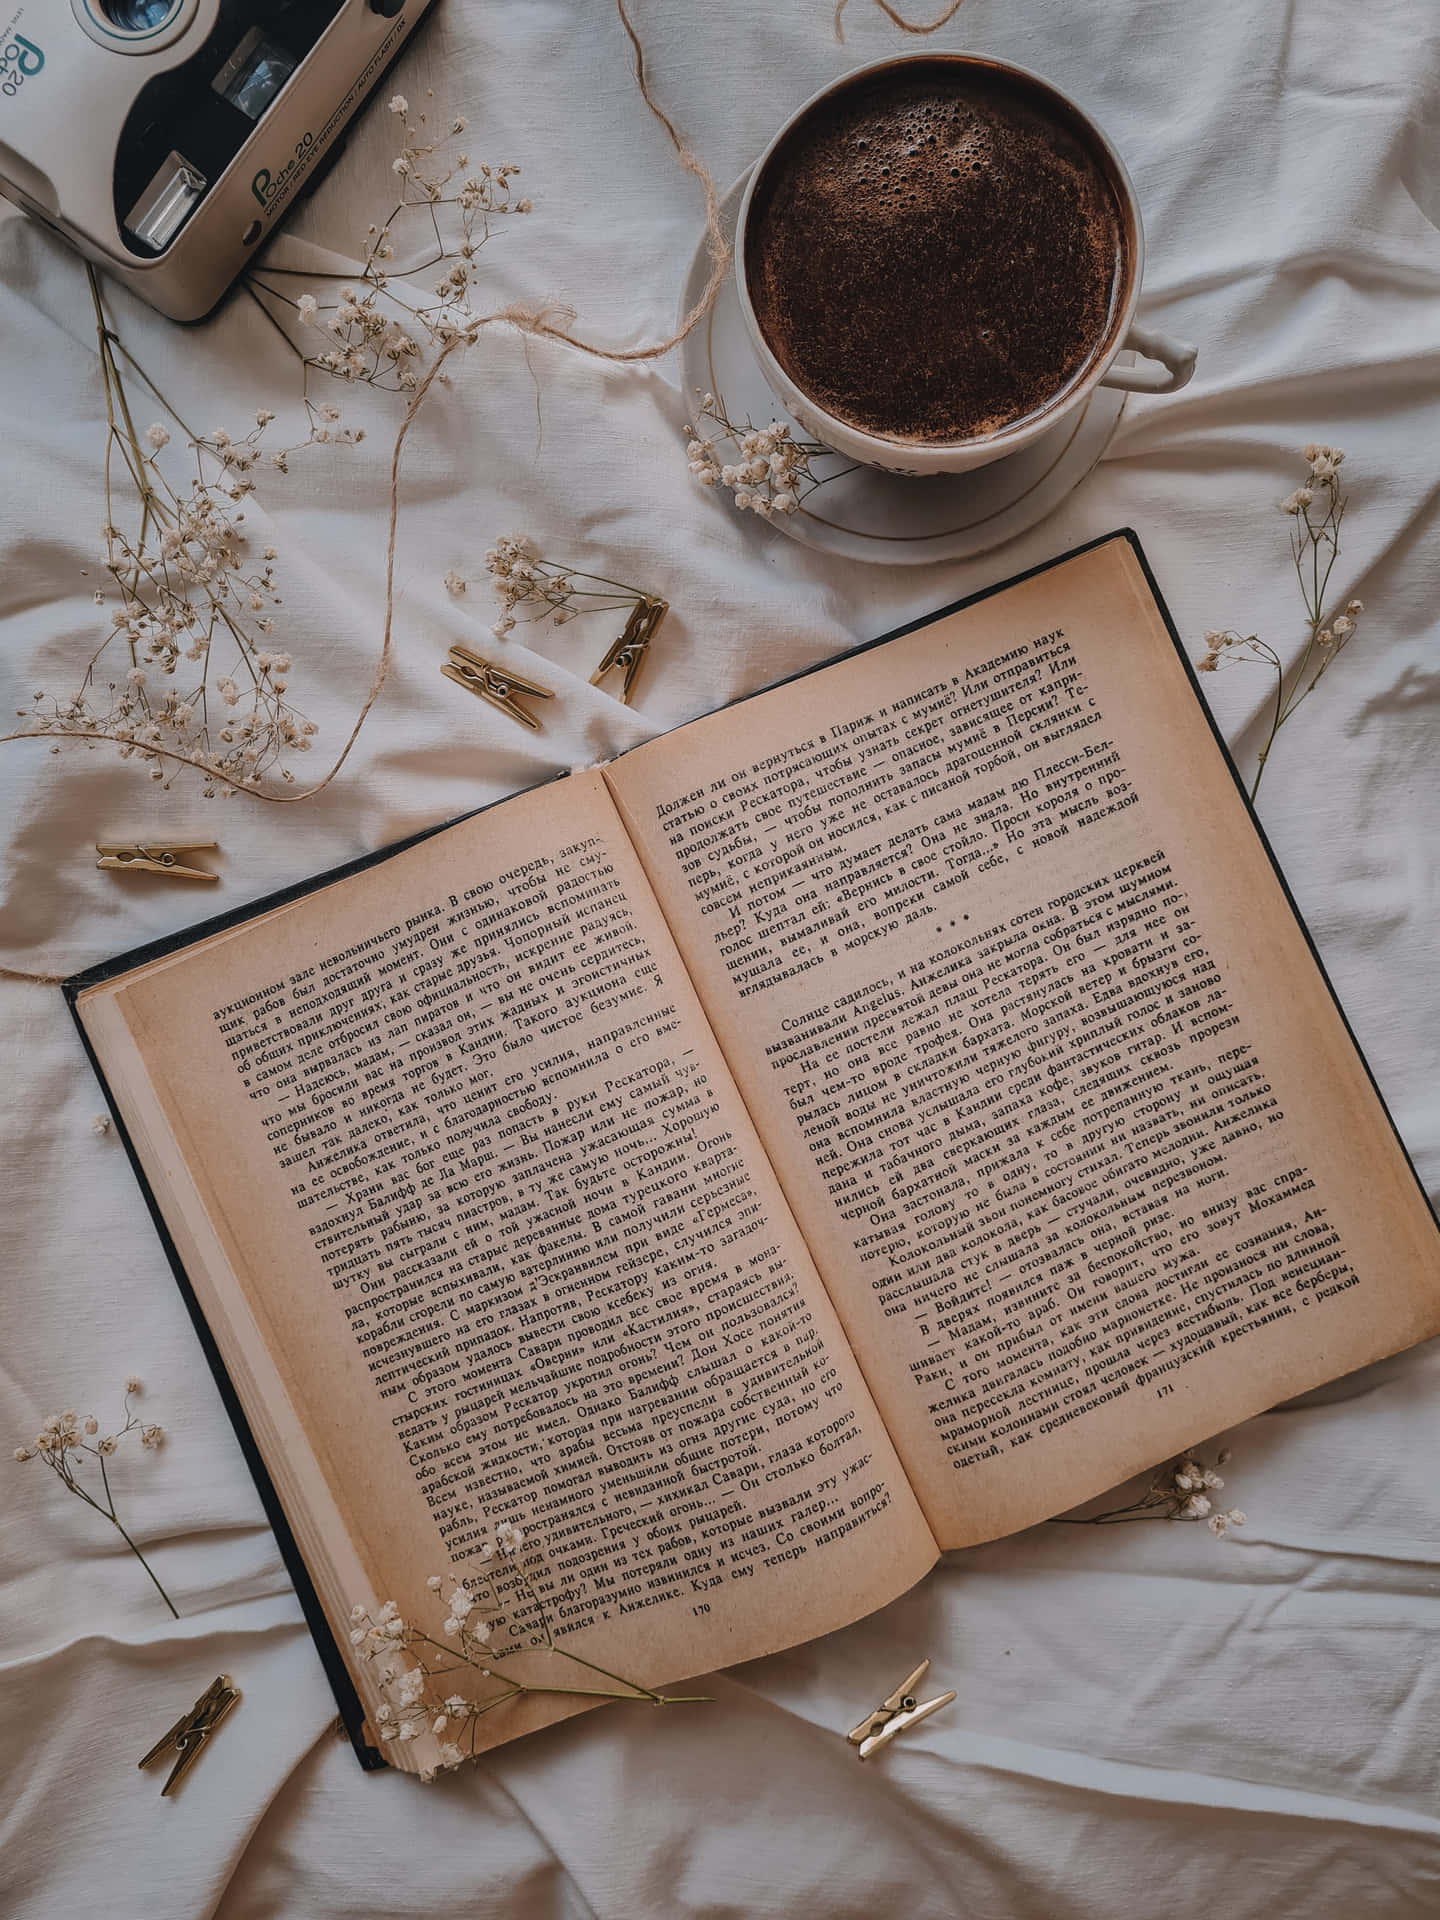 Einbuch Mit Kaffee Und Blumen Auf Einem Bett